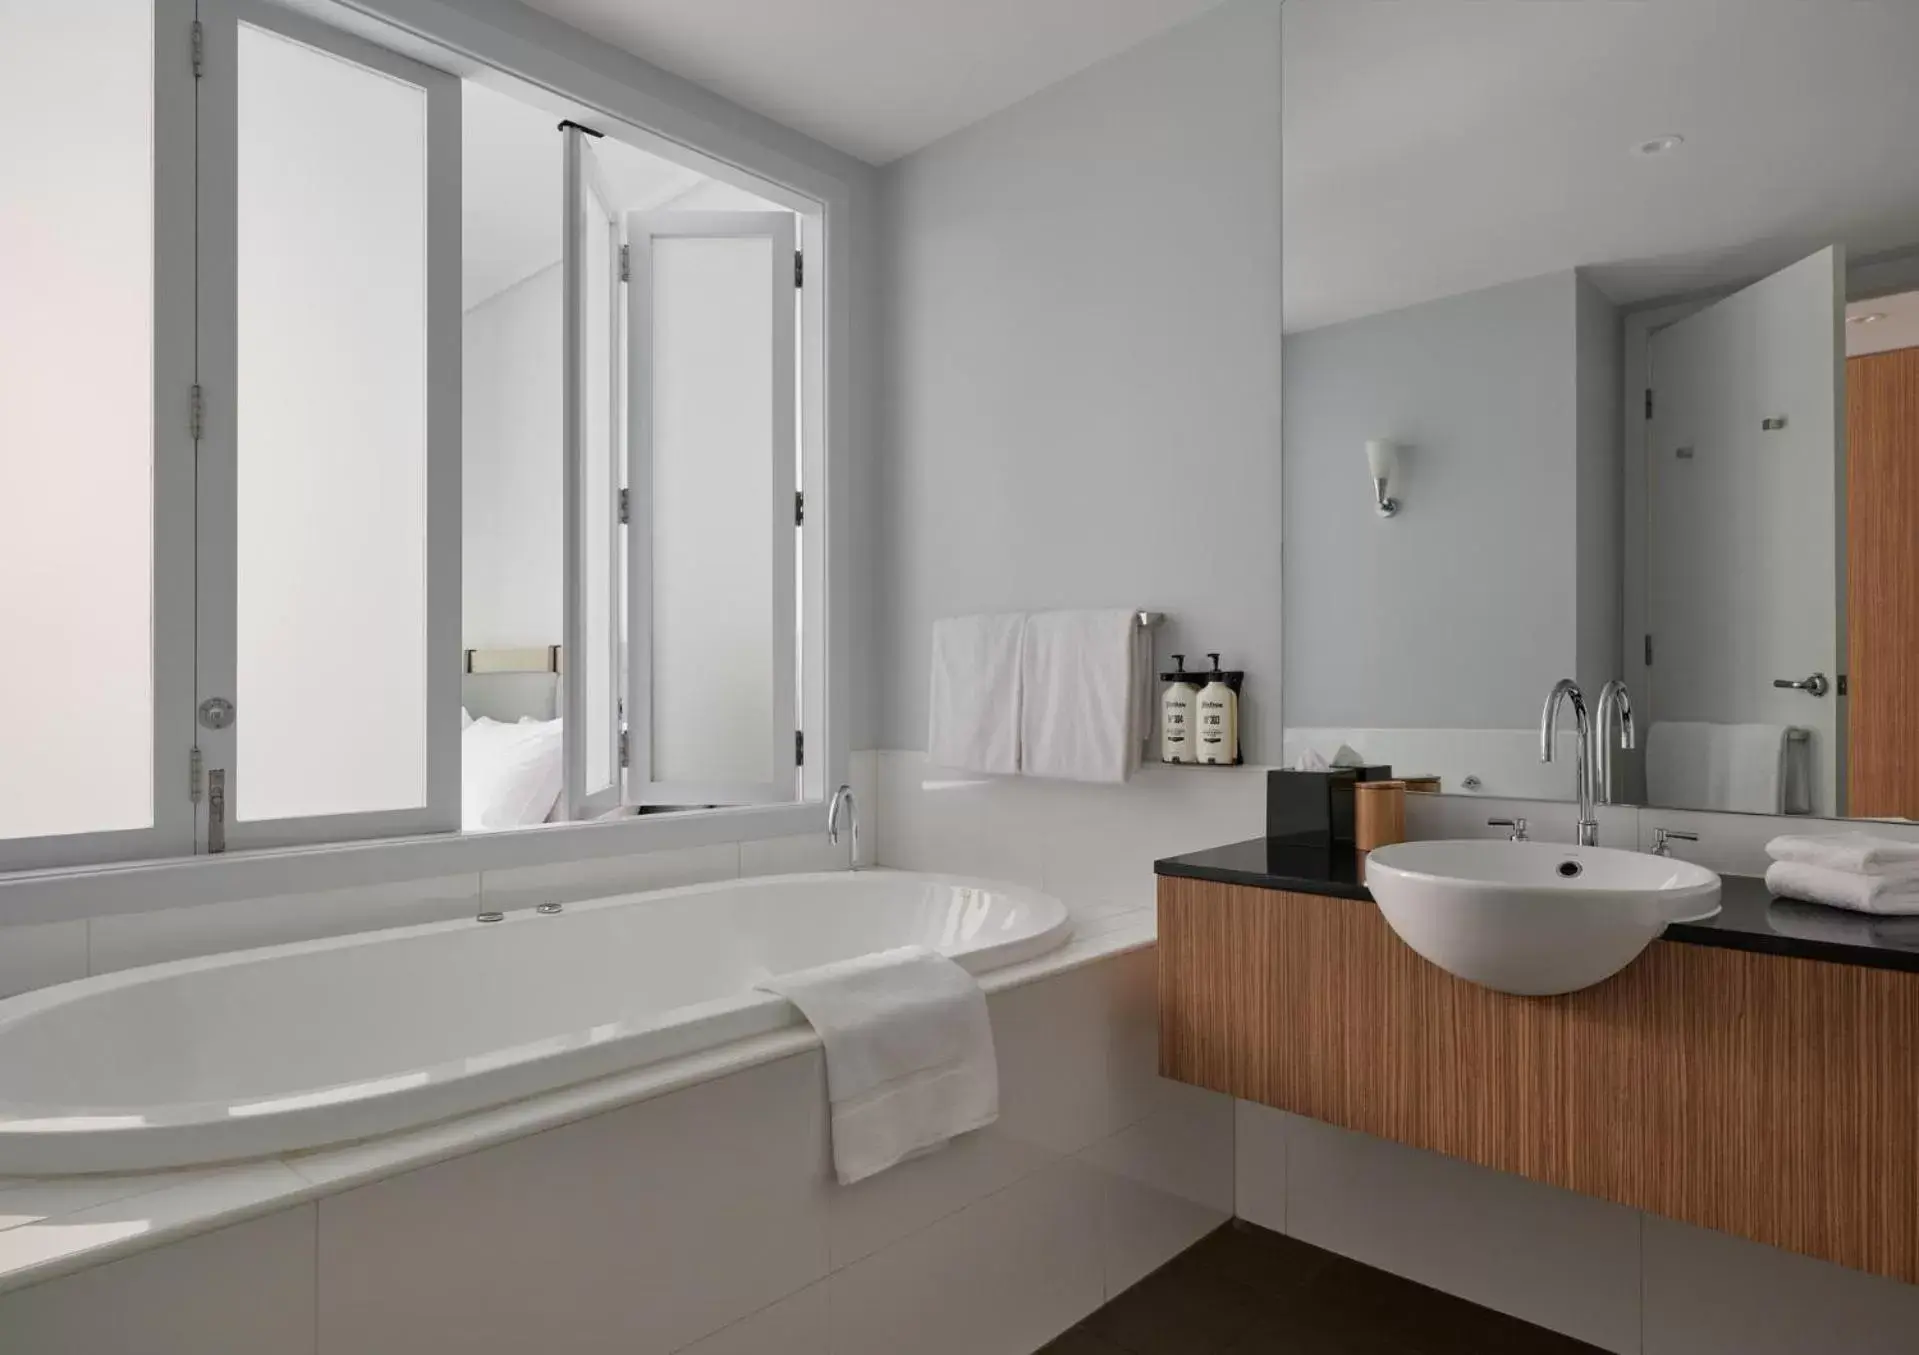 Property building, Bathroom in RACV Goldfields Resort